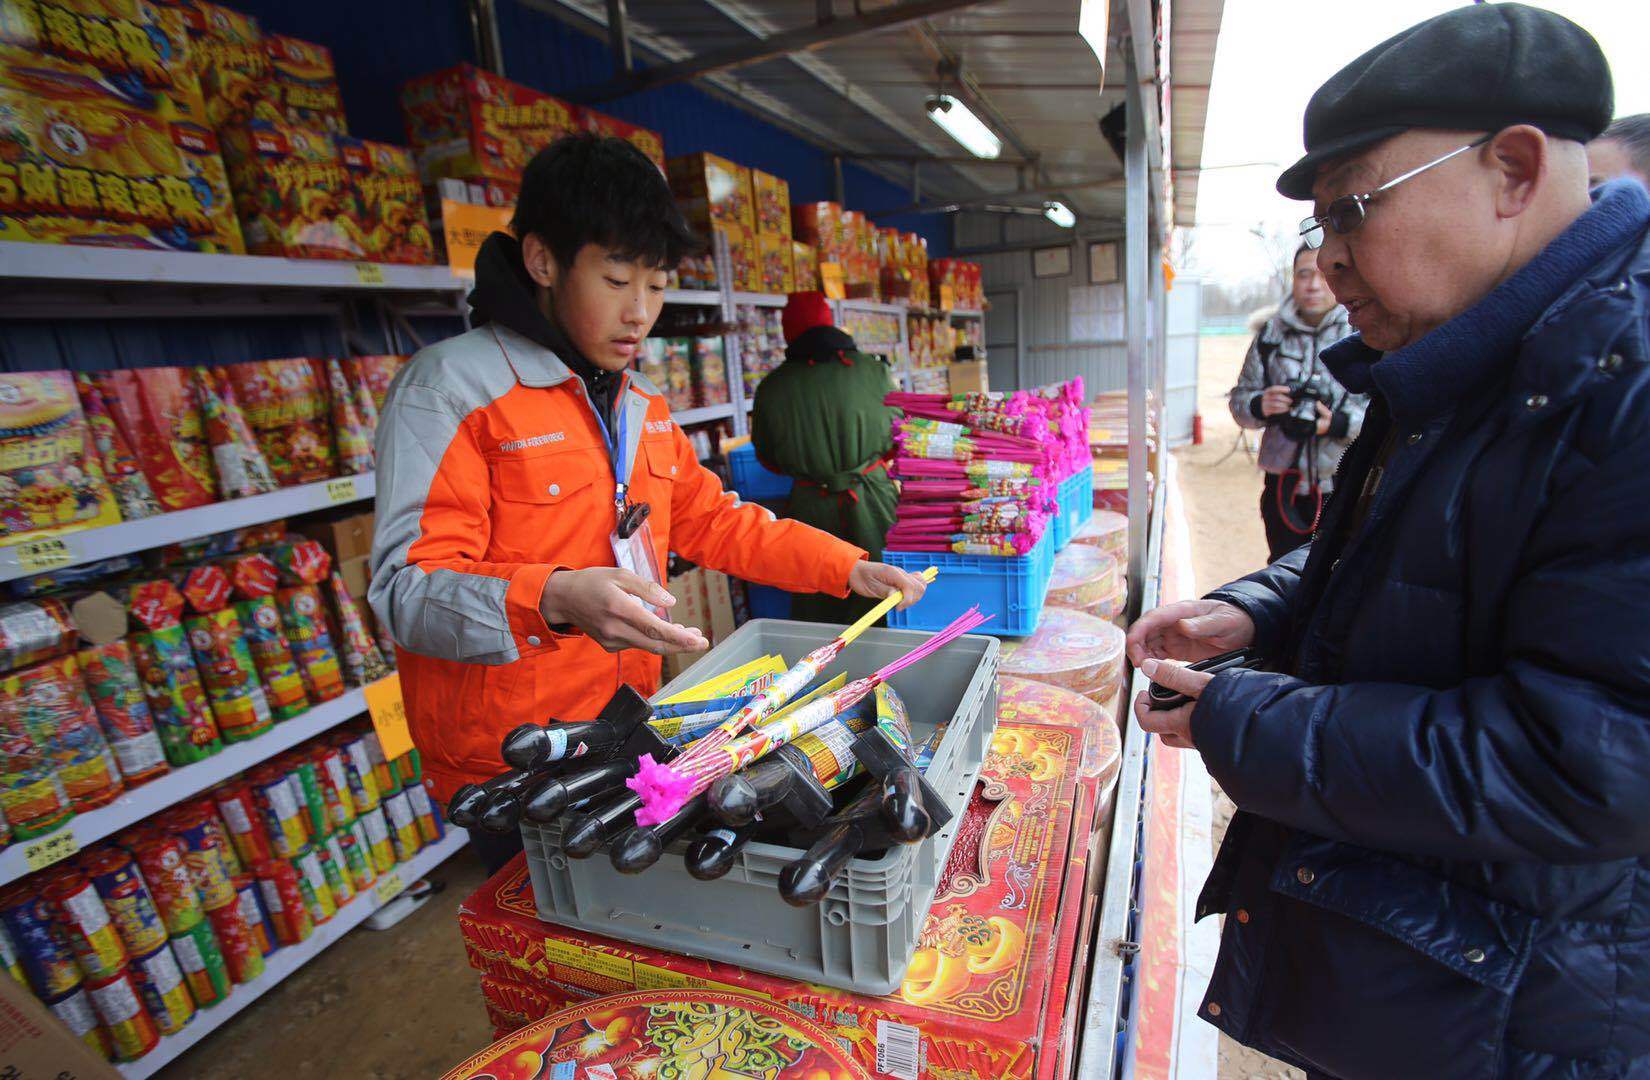 自2010年起,北京市的花炮销售就已采用电子标签模式,熊猫烟花的每箱